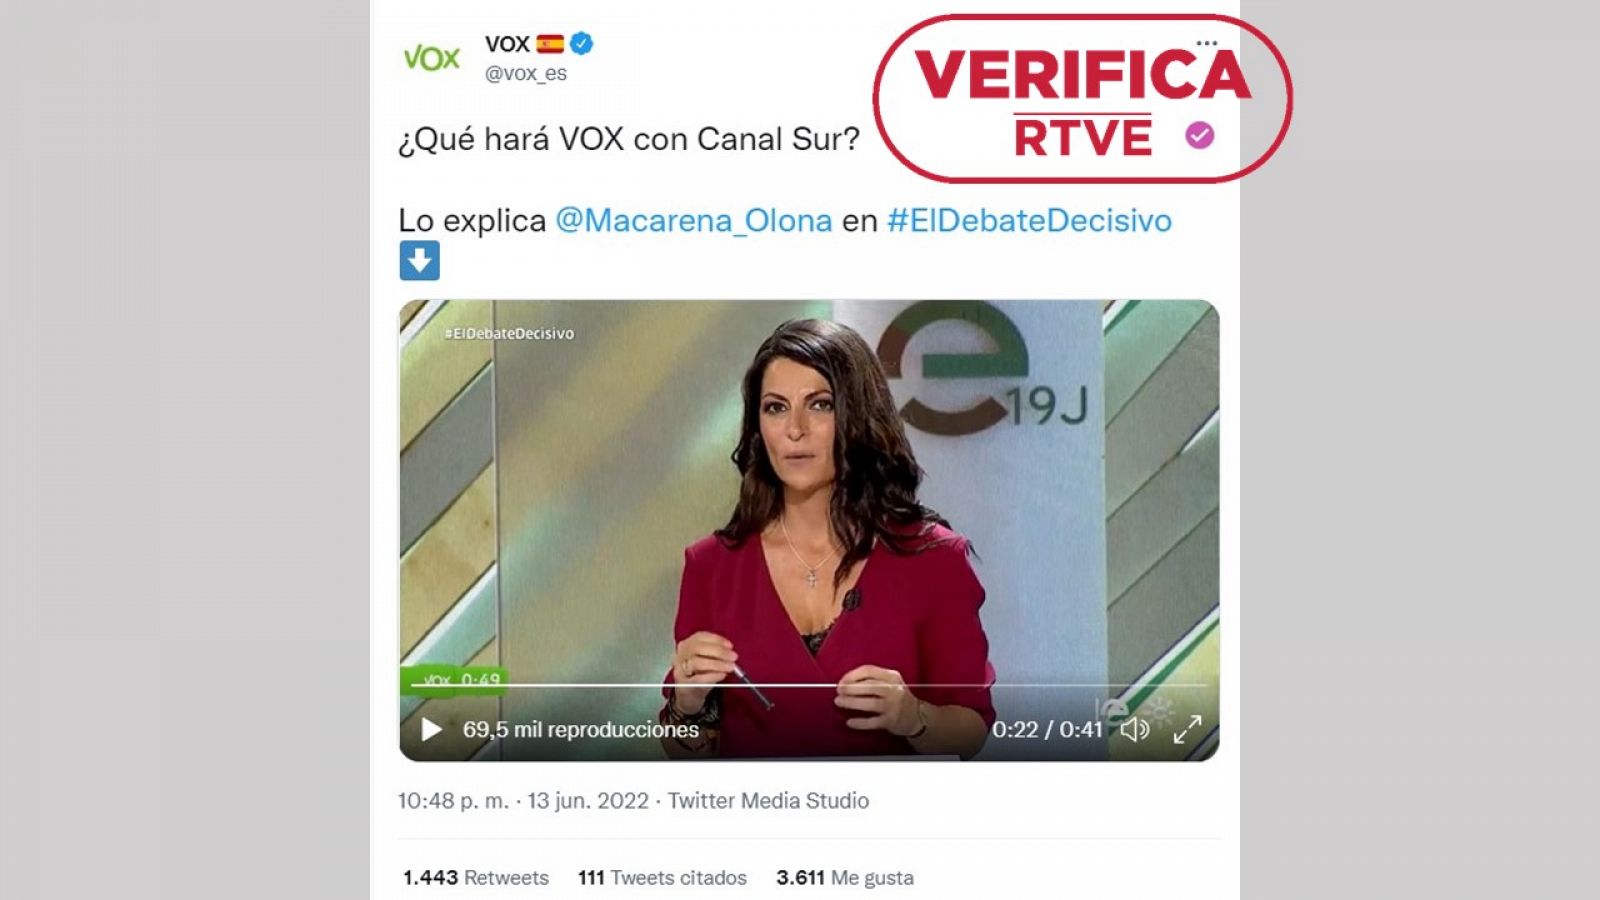 Captura del vídeo en el que Macarena Olona explica su compromiso de mantener Canal Sur, difundido en la cuenta de Vox en Twitter con el sello: VerificaRTVE